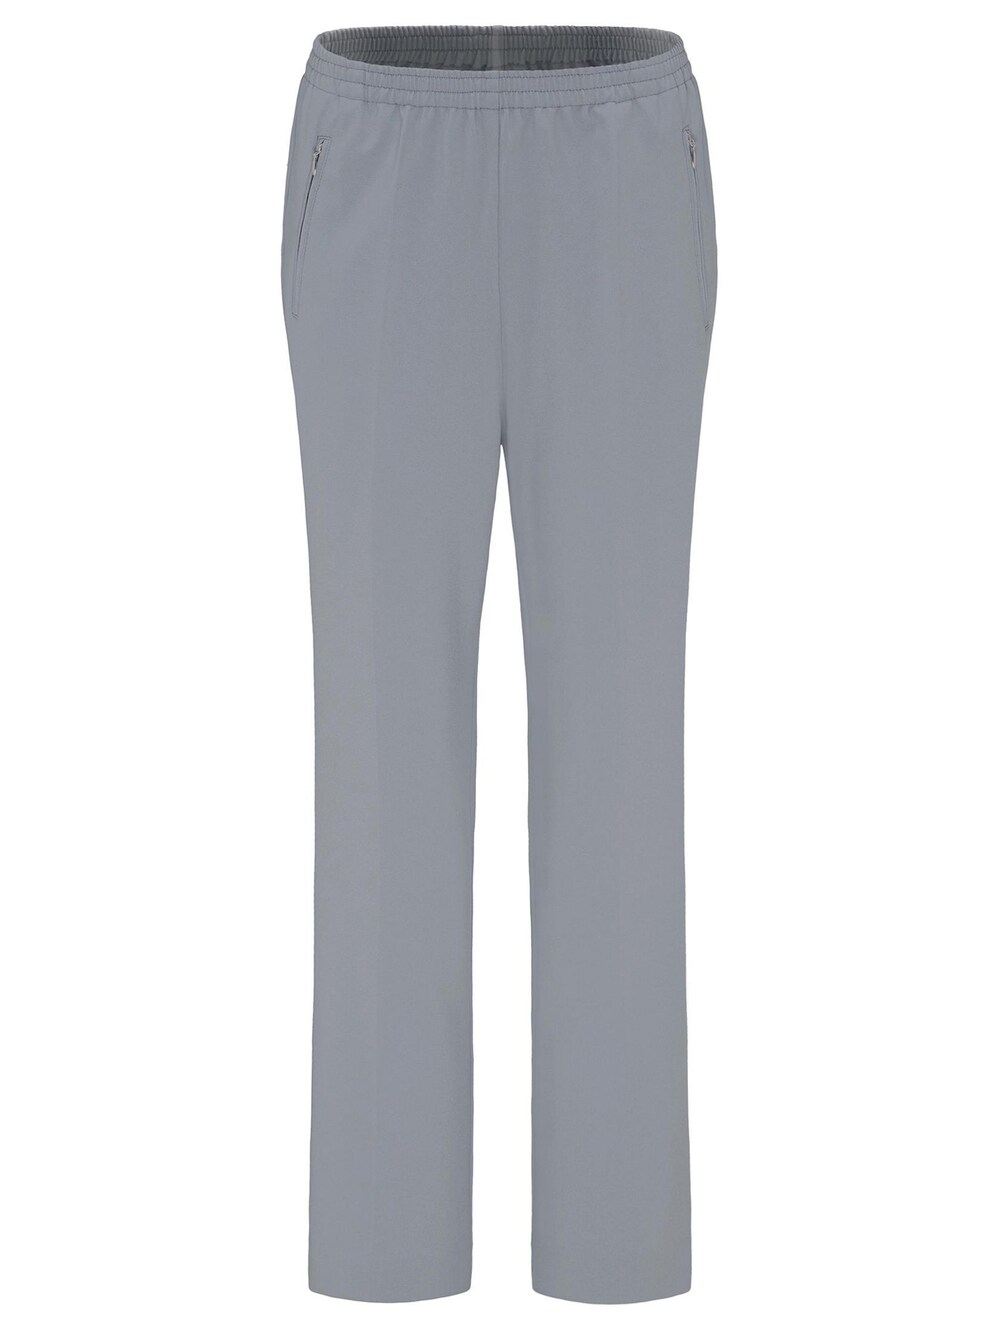 Обычные брюки Goldner Louisa, серебристо-серый